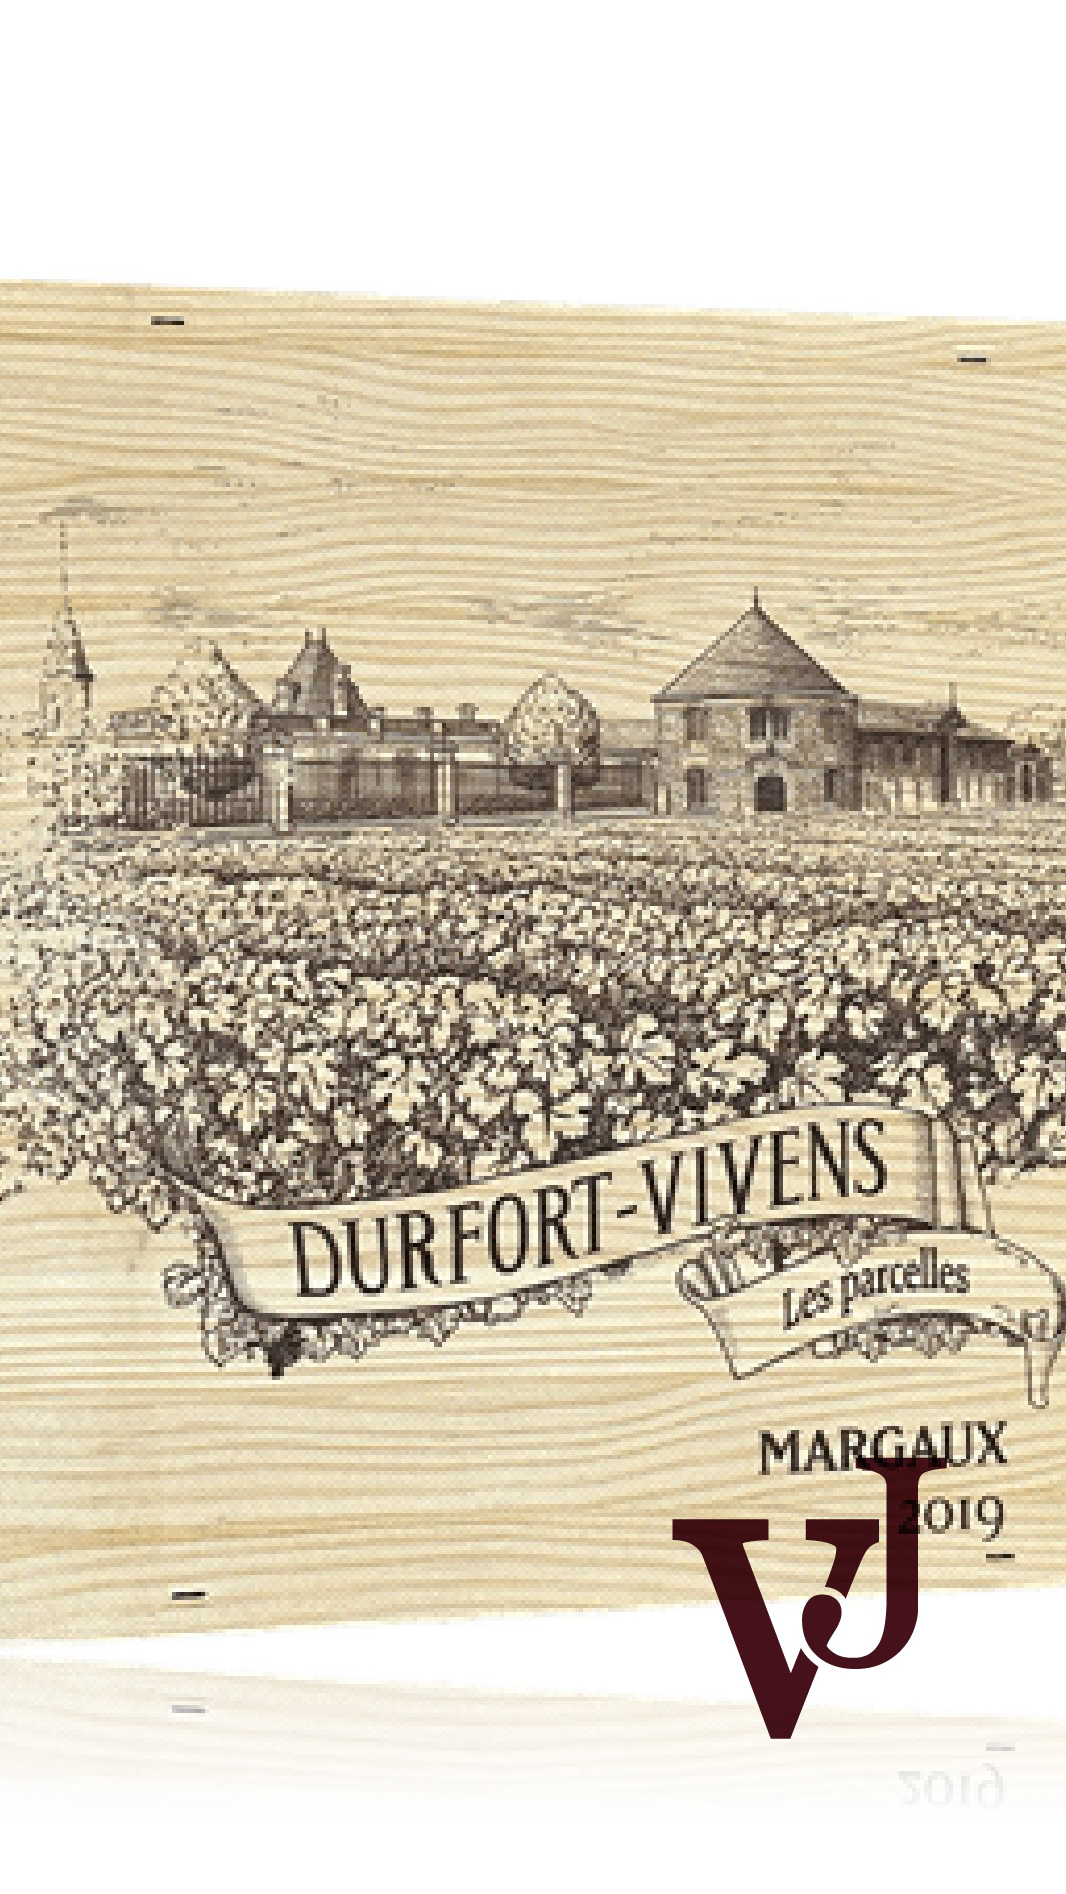 Vinlåda - Château Durfort-Vivens Les Parcelles Trälåda Rött vin artikel nummer 1308309 från producenten Château Durfort-Vivens från området